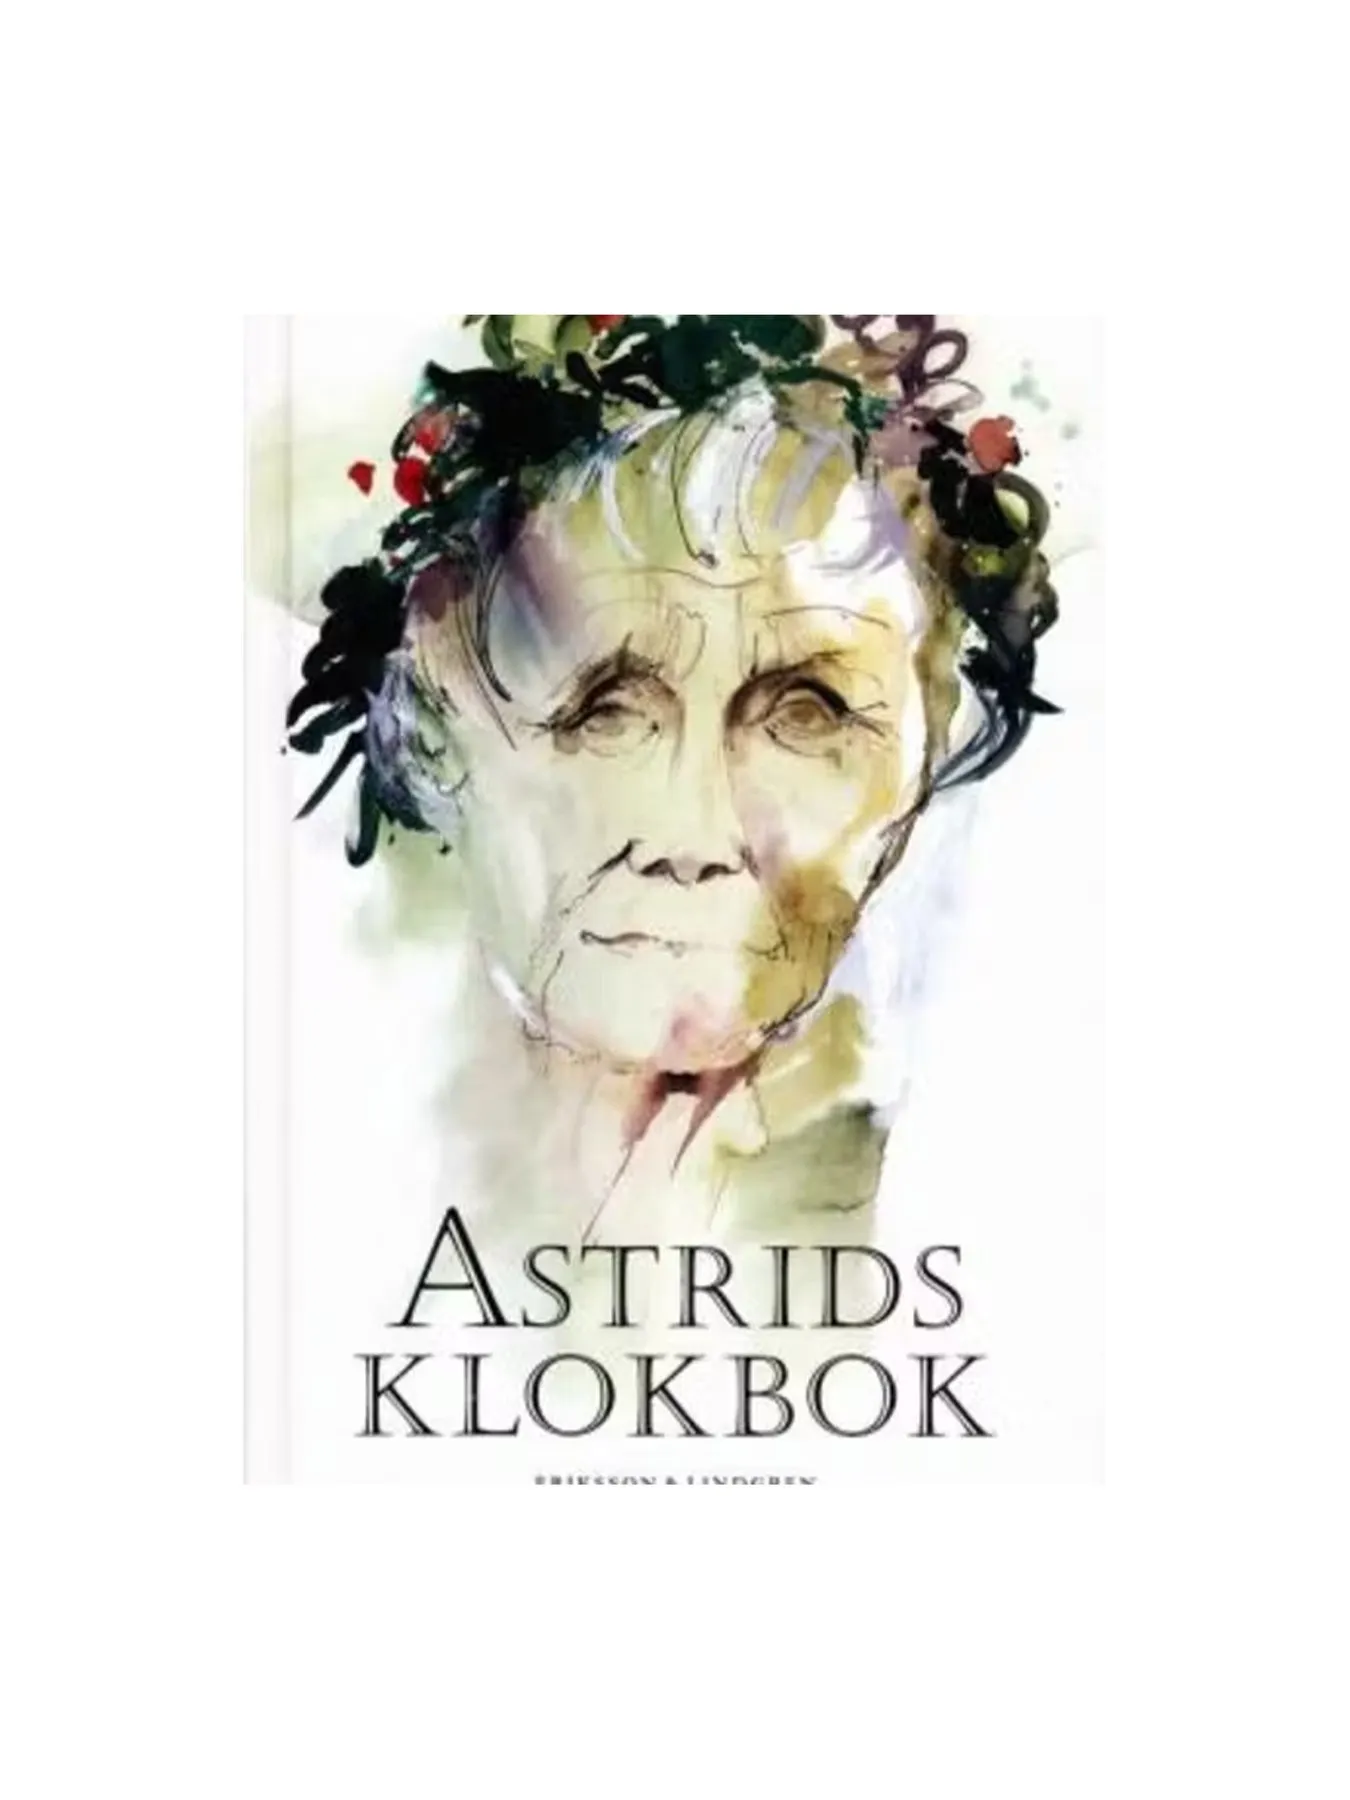 Astrids klokbok (Swedish)